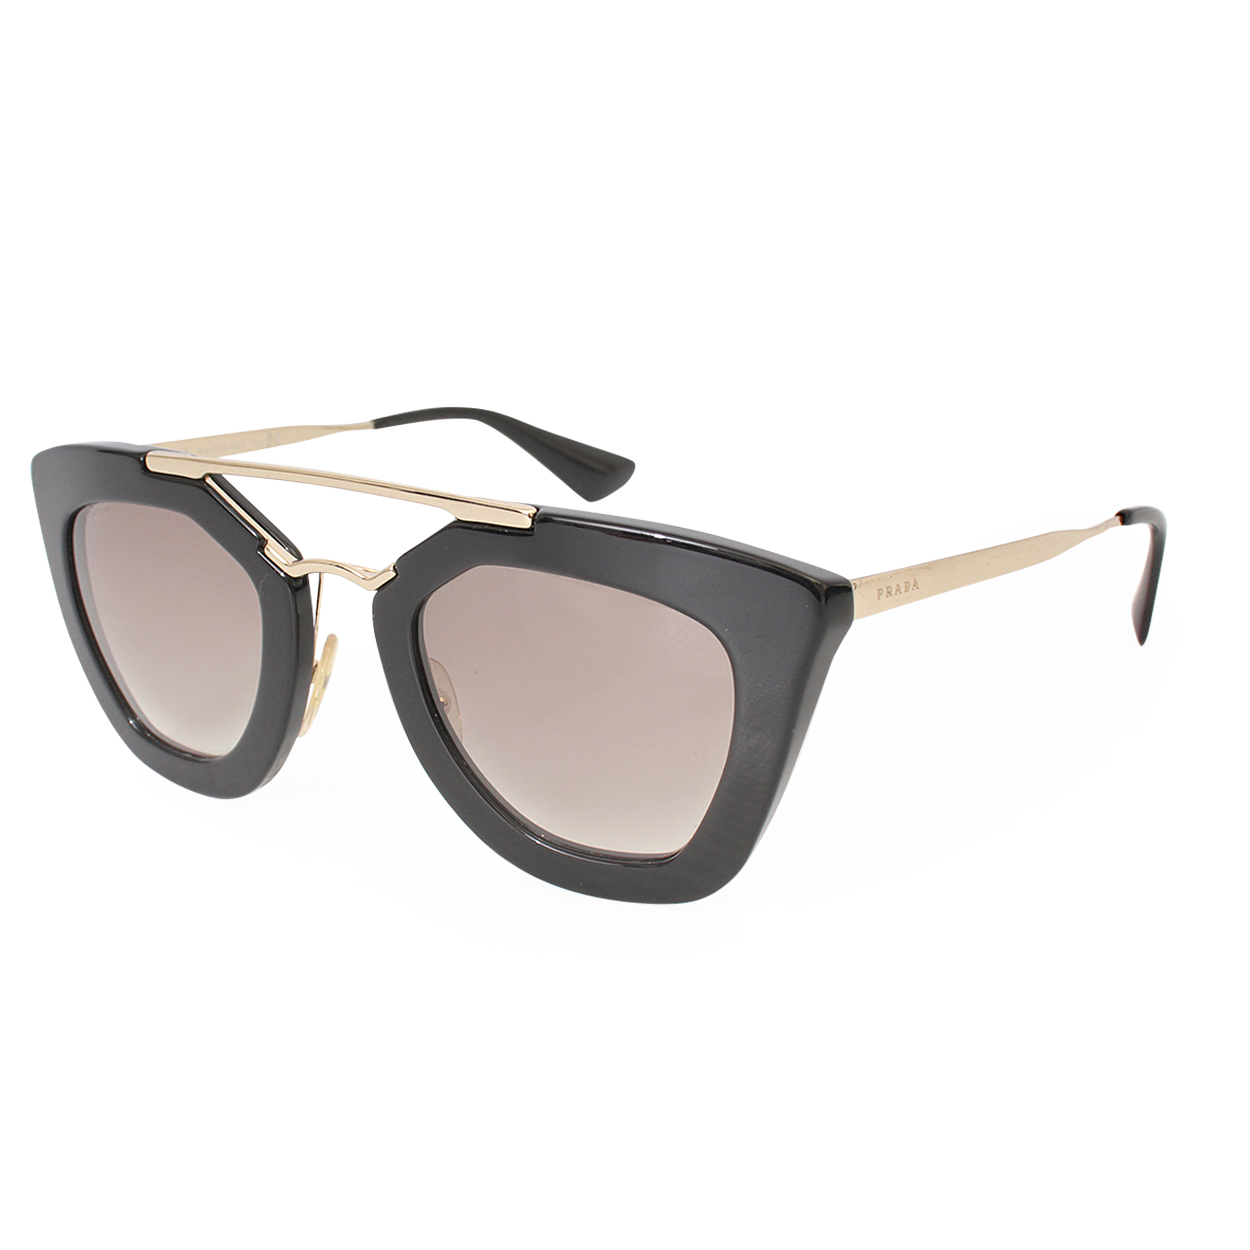 PRADA Sunglasses SPR 09Q Black/Gold | Luxity